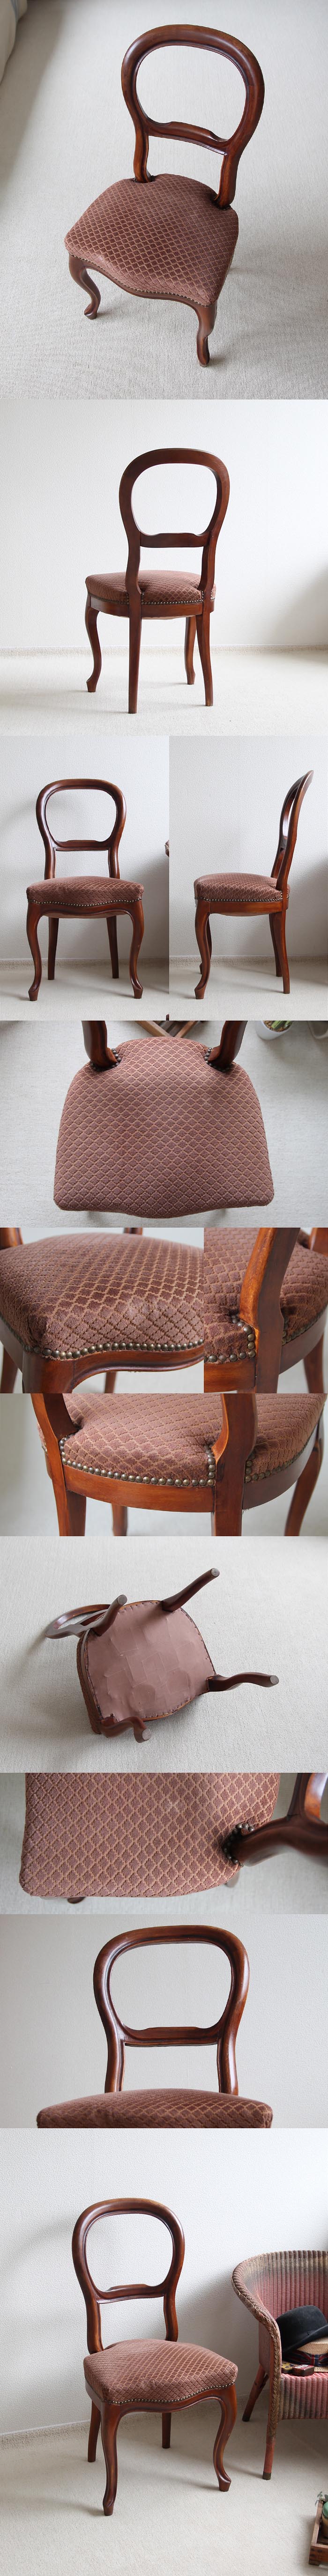 イギリス アンティーク 猫脚バルーンバックチェア/サロンチェア/クッションシート/英国家具【座り心地の良い古い椅子】M-286